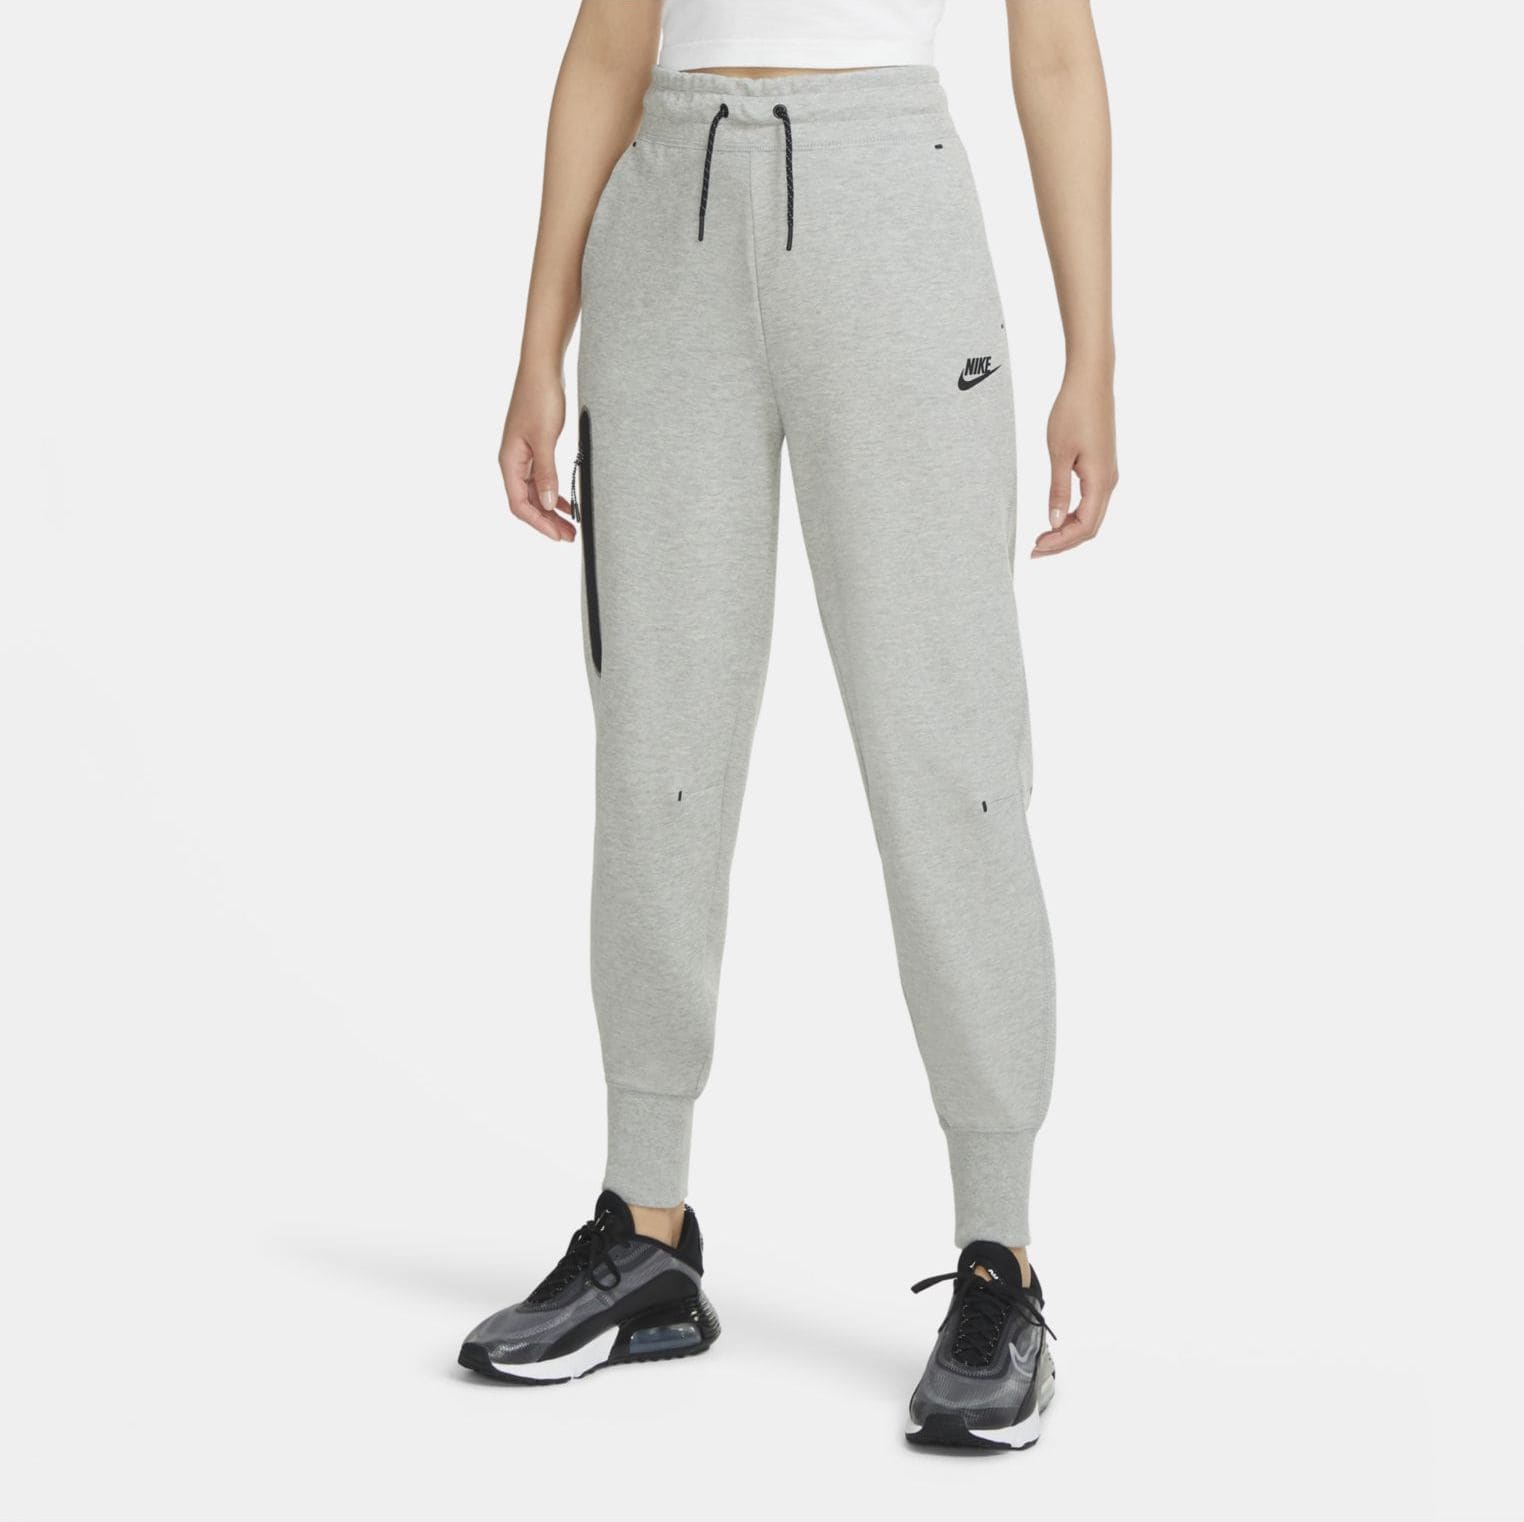 NIKE, Nike Sportswear Tech Fleece Women's